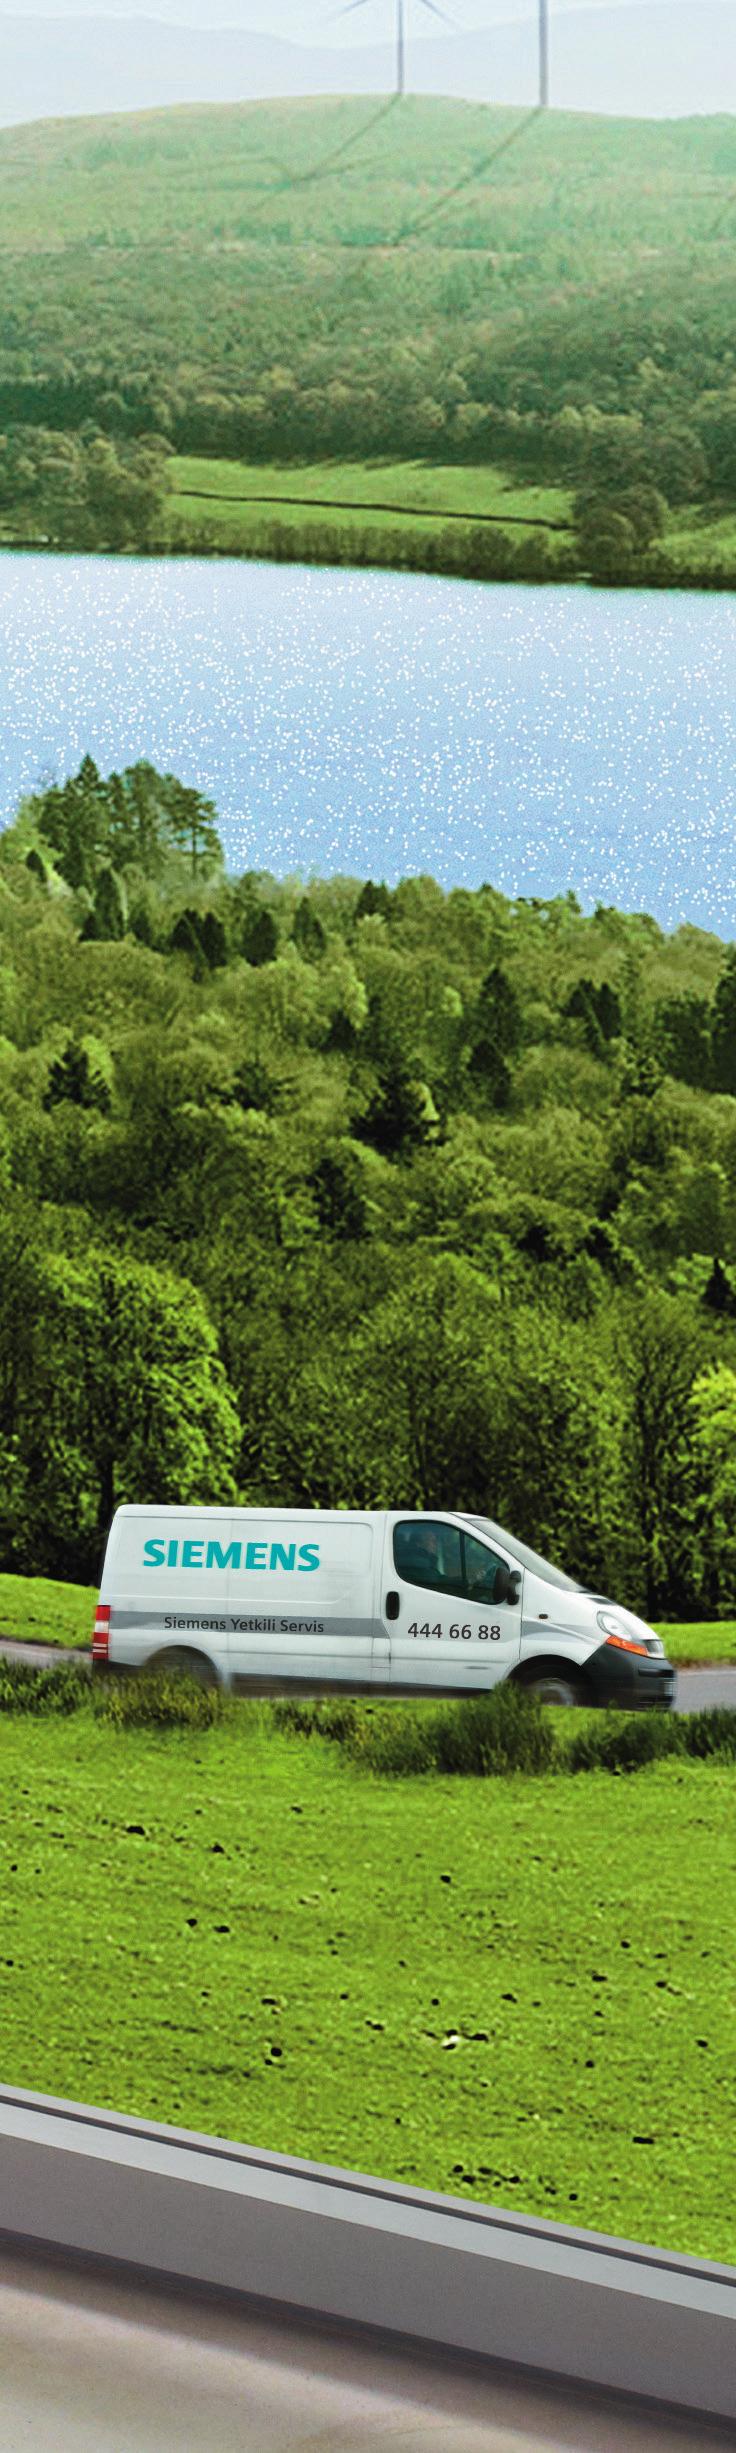 Serviste mükemmellik Siemens te. Online servis kaydı Siemens yetkili servisi, online servis kaydıyla bir tık uzağınızda. Yaygın servis ağı Yaygın servis ağına sahibiz.